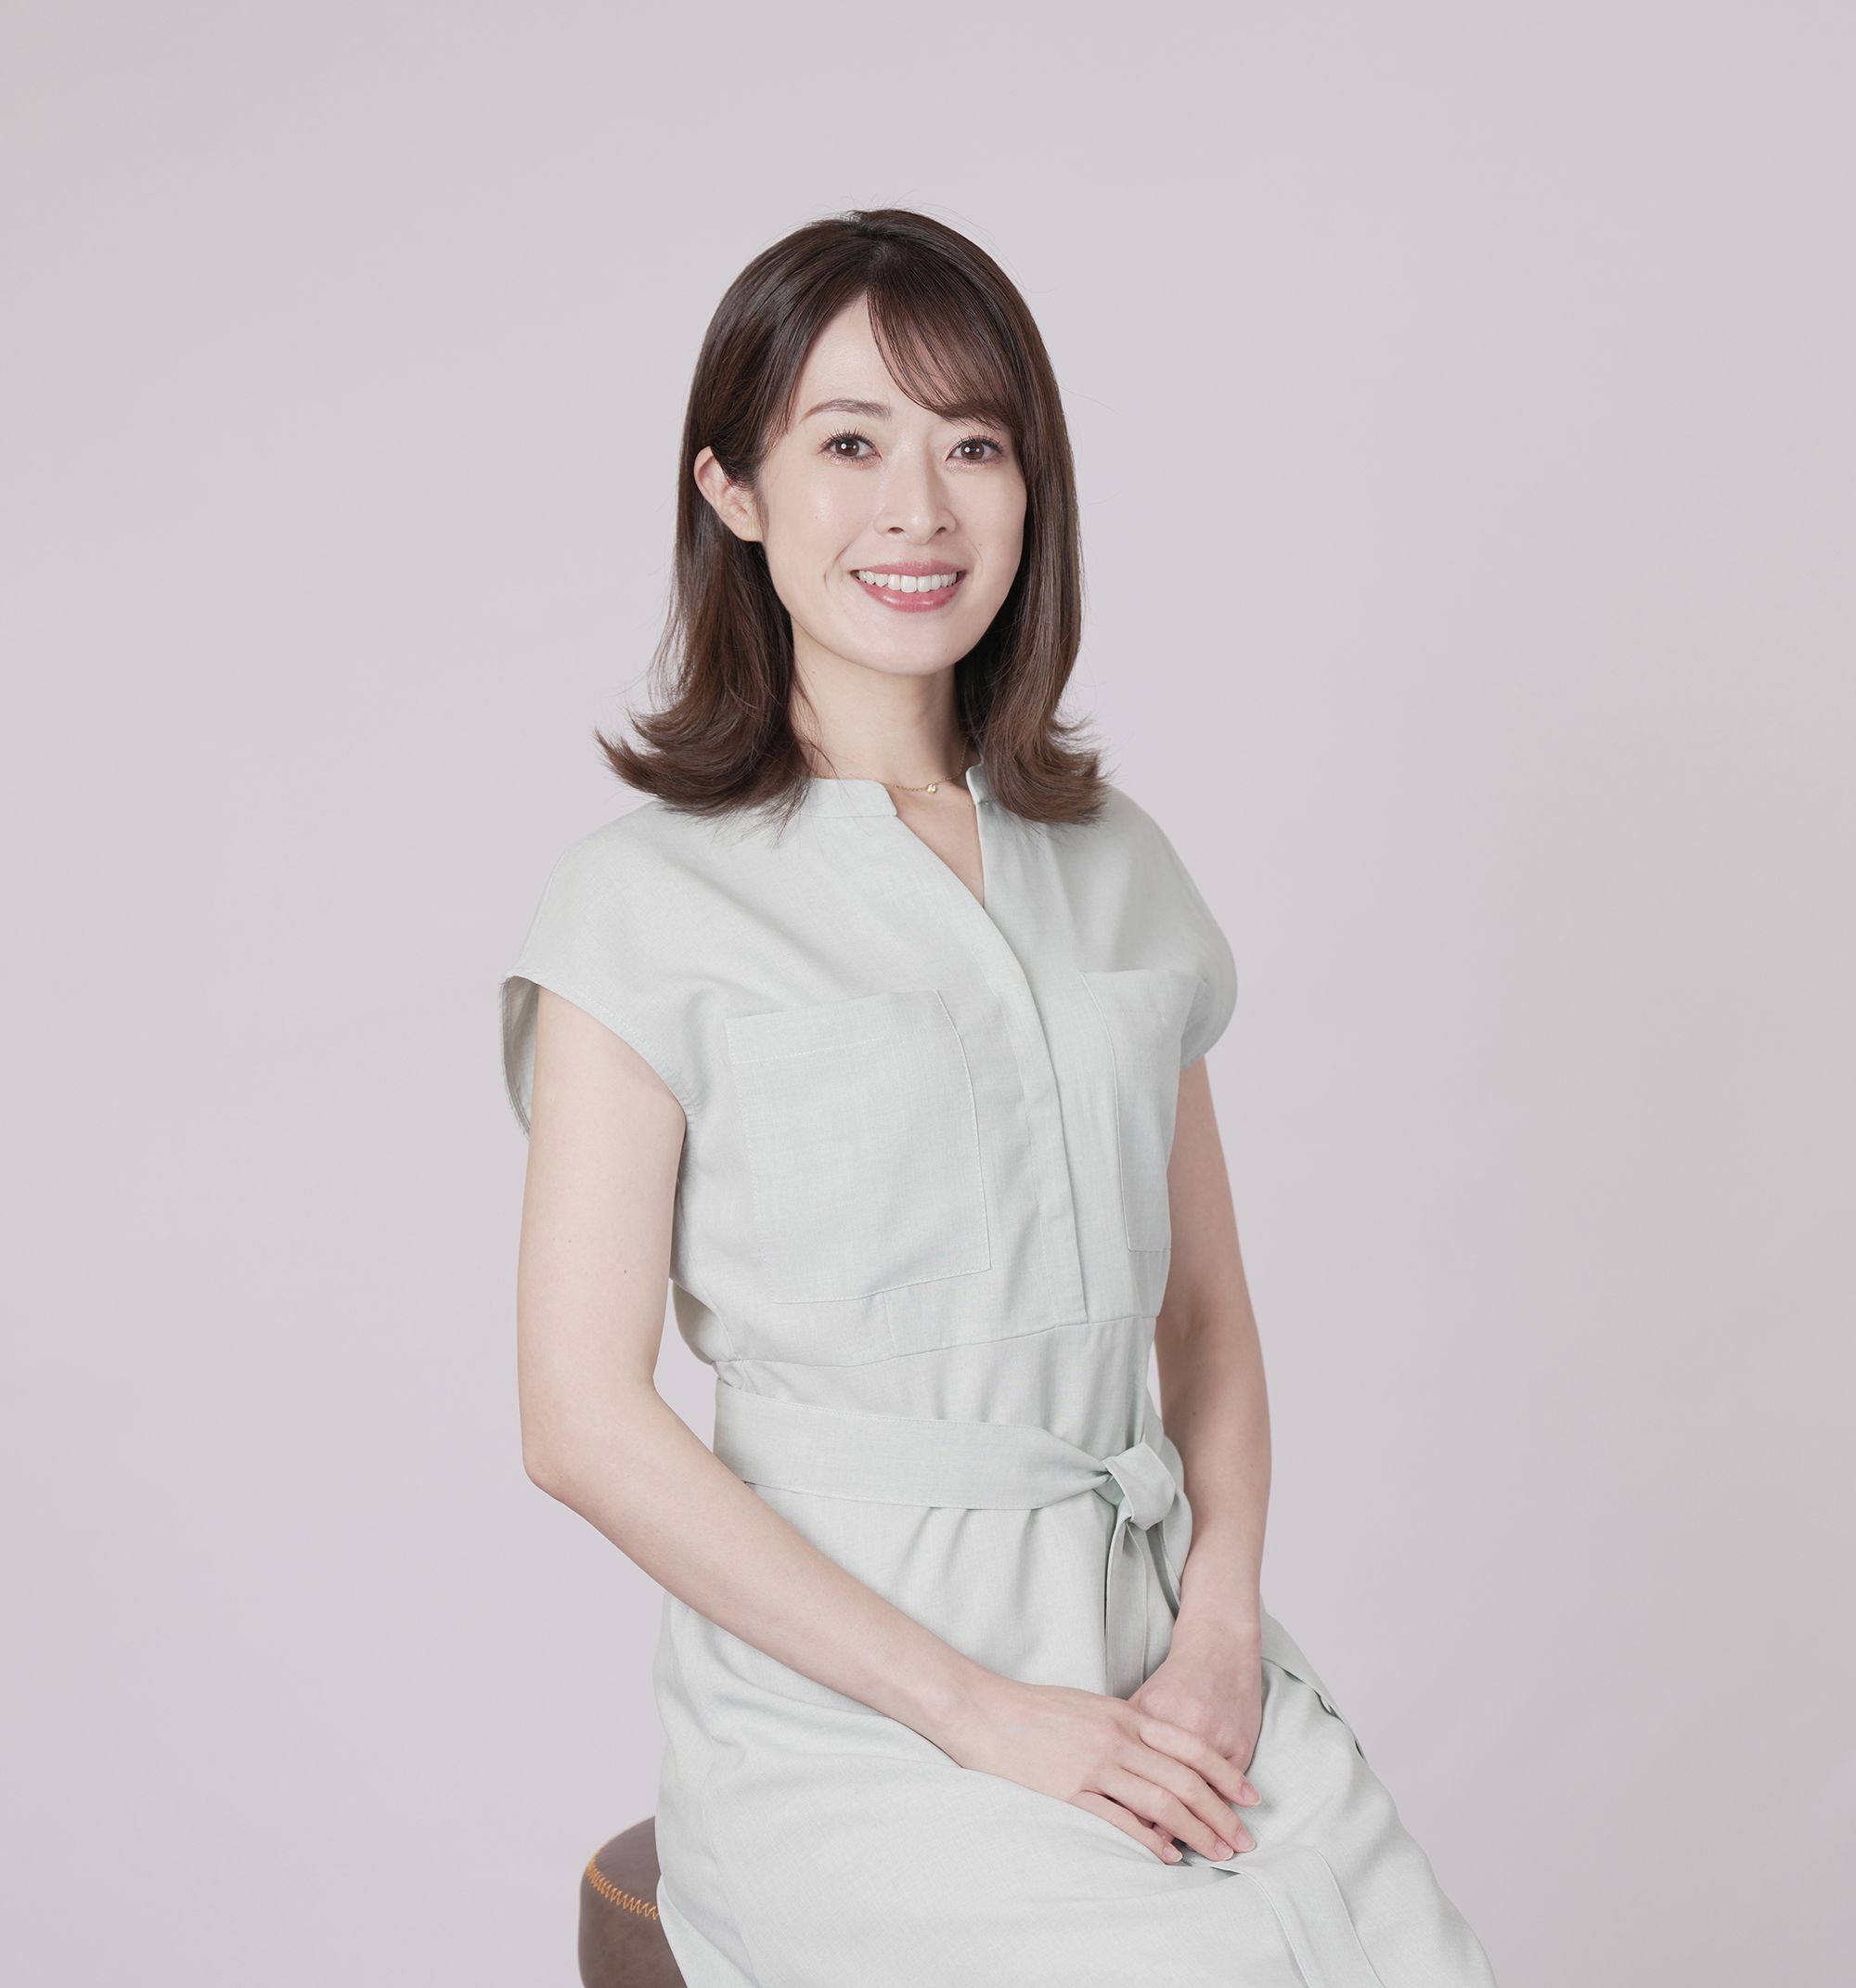 東京で石沢綾子がセミナーの司会を務めさせていただきました。